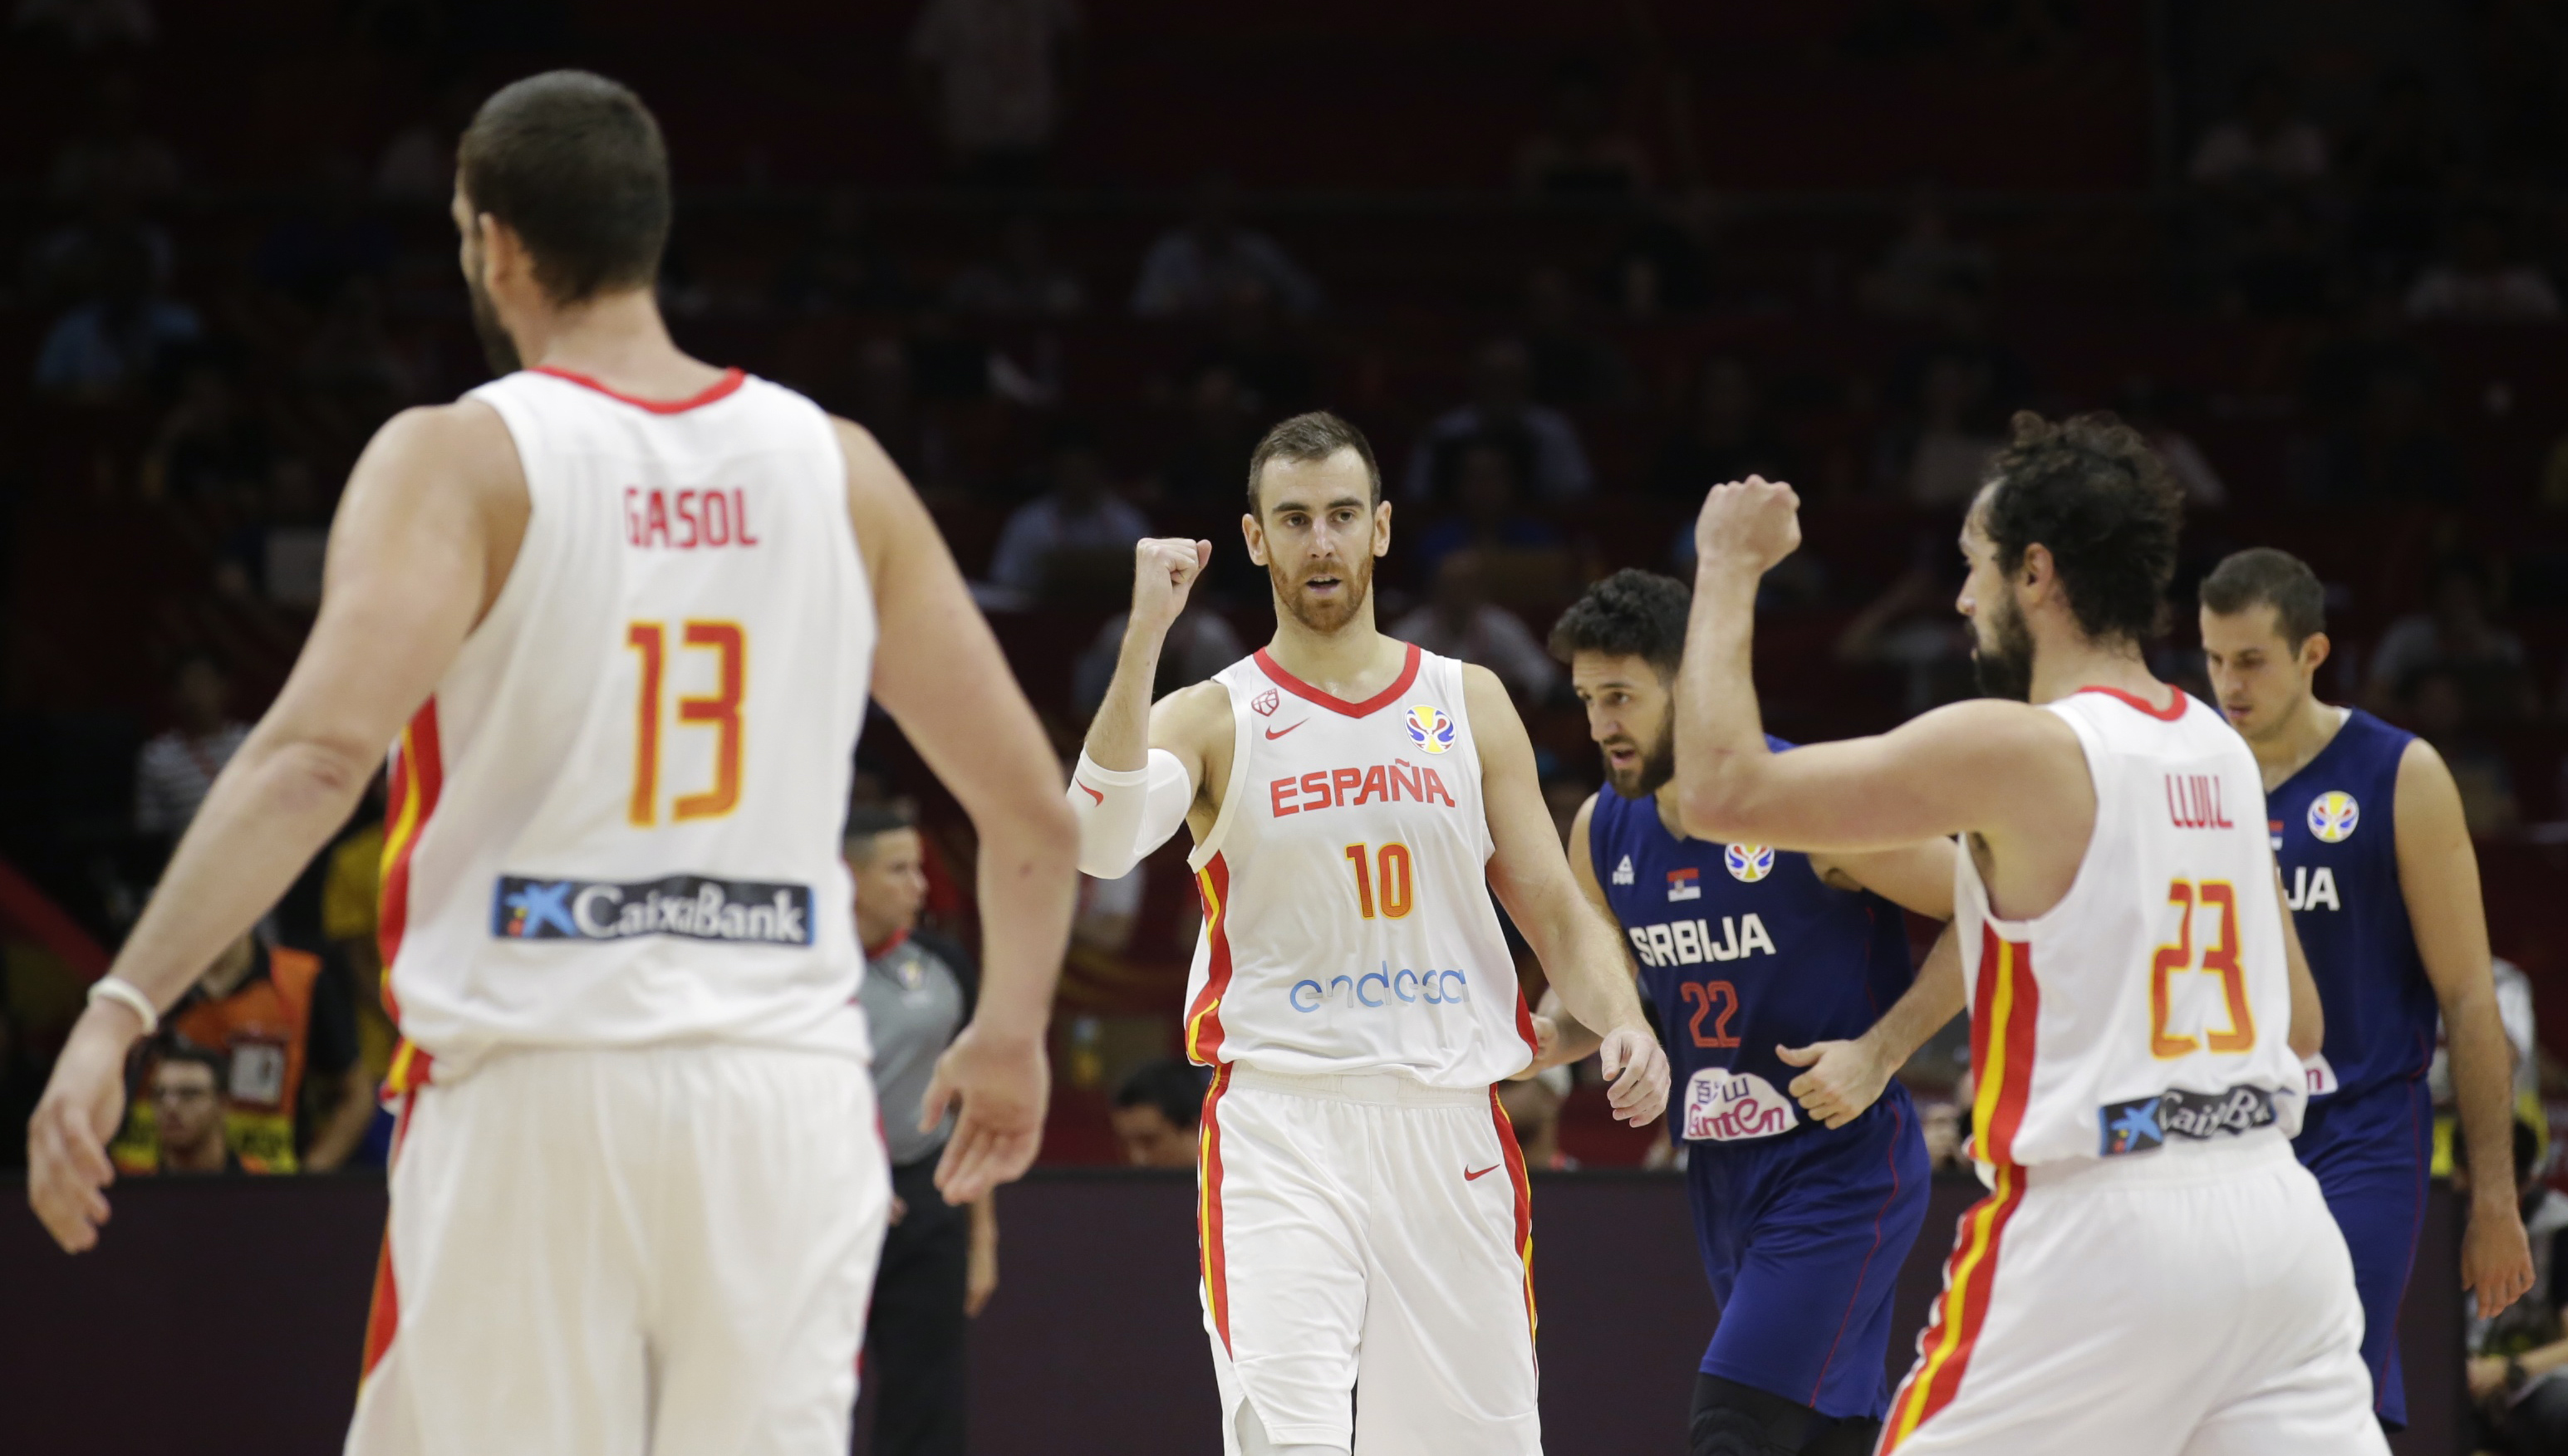 Μουντομπάσκετ 2019: Η Ισπανία “προσγείωσε” τη Σερβία! Τα πρώτα ζευγάρια των προημιτελικών